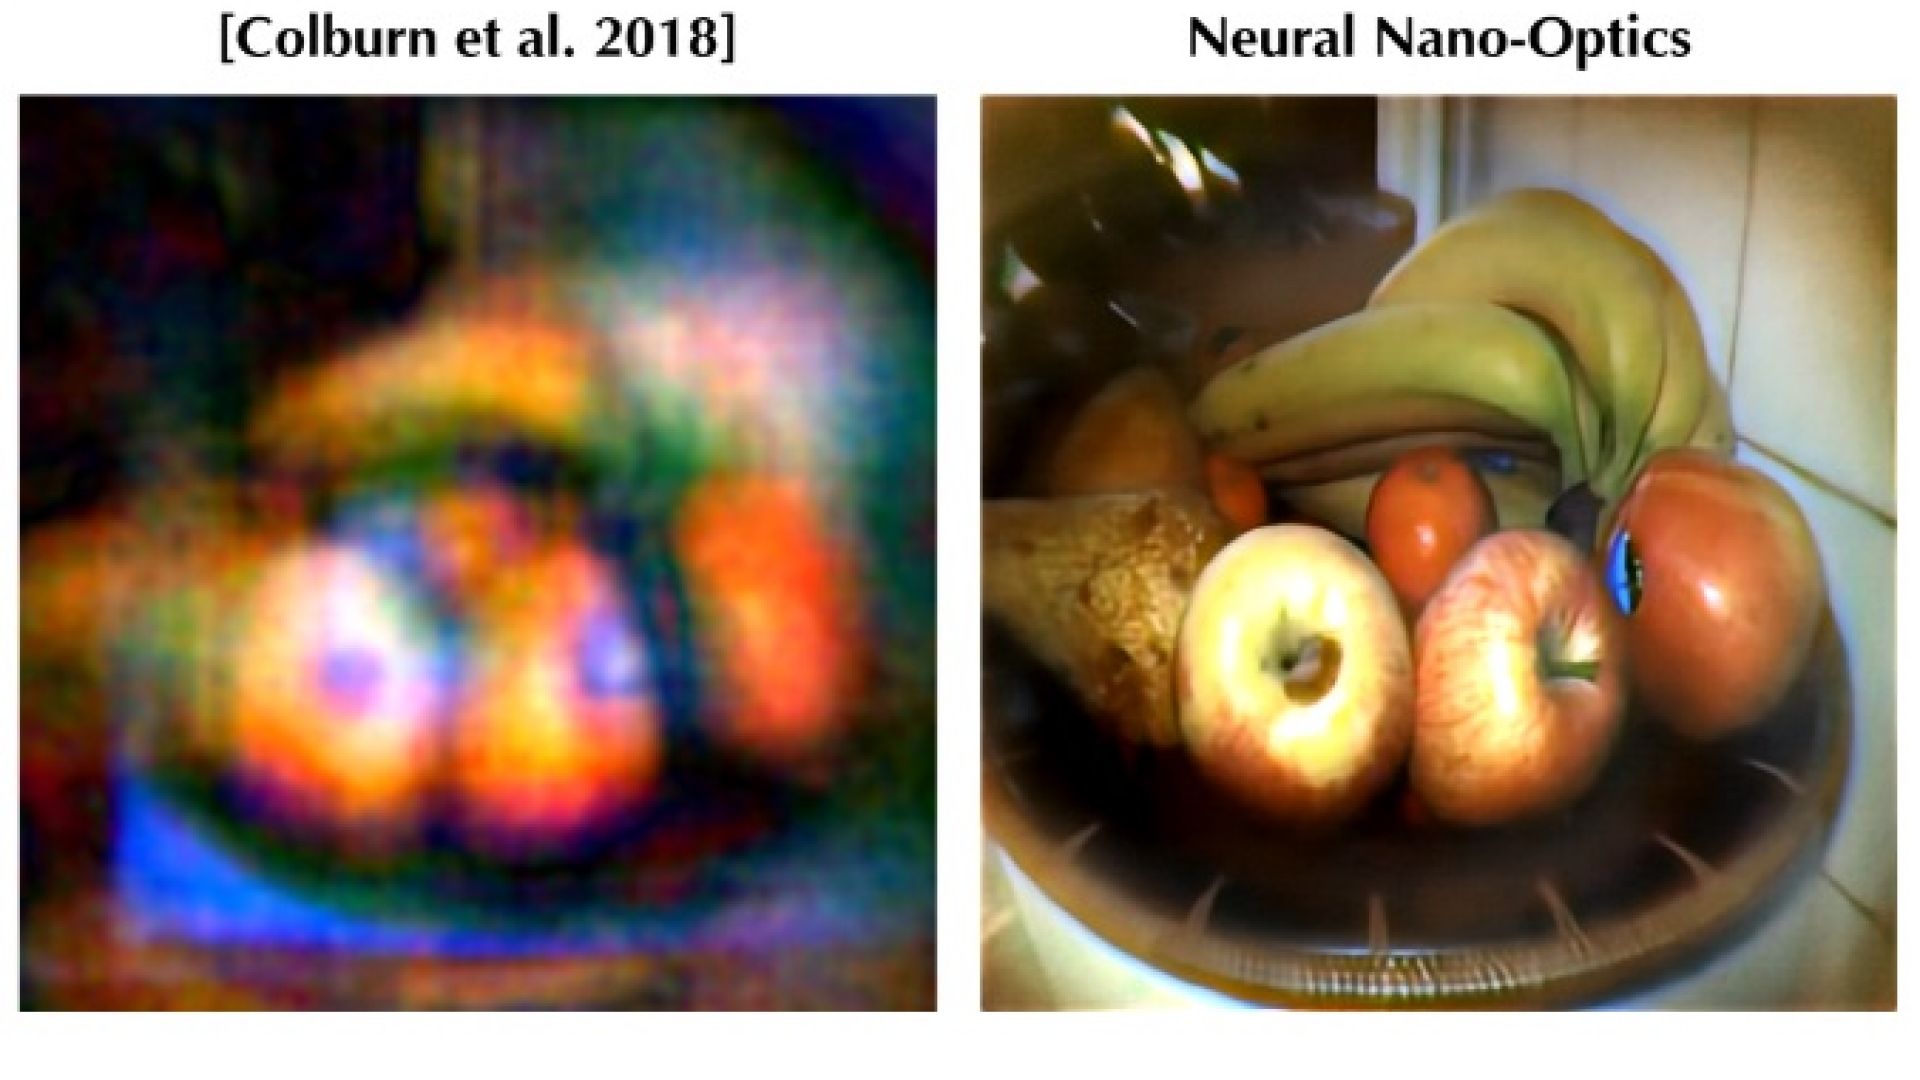 Neural Nano-Optics